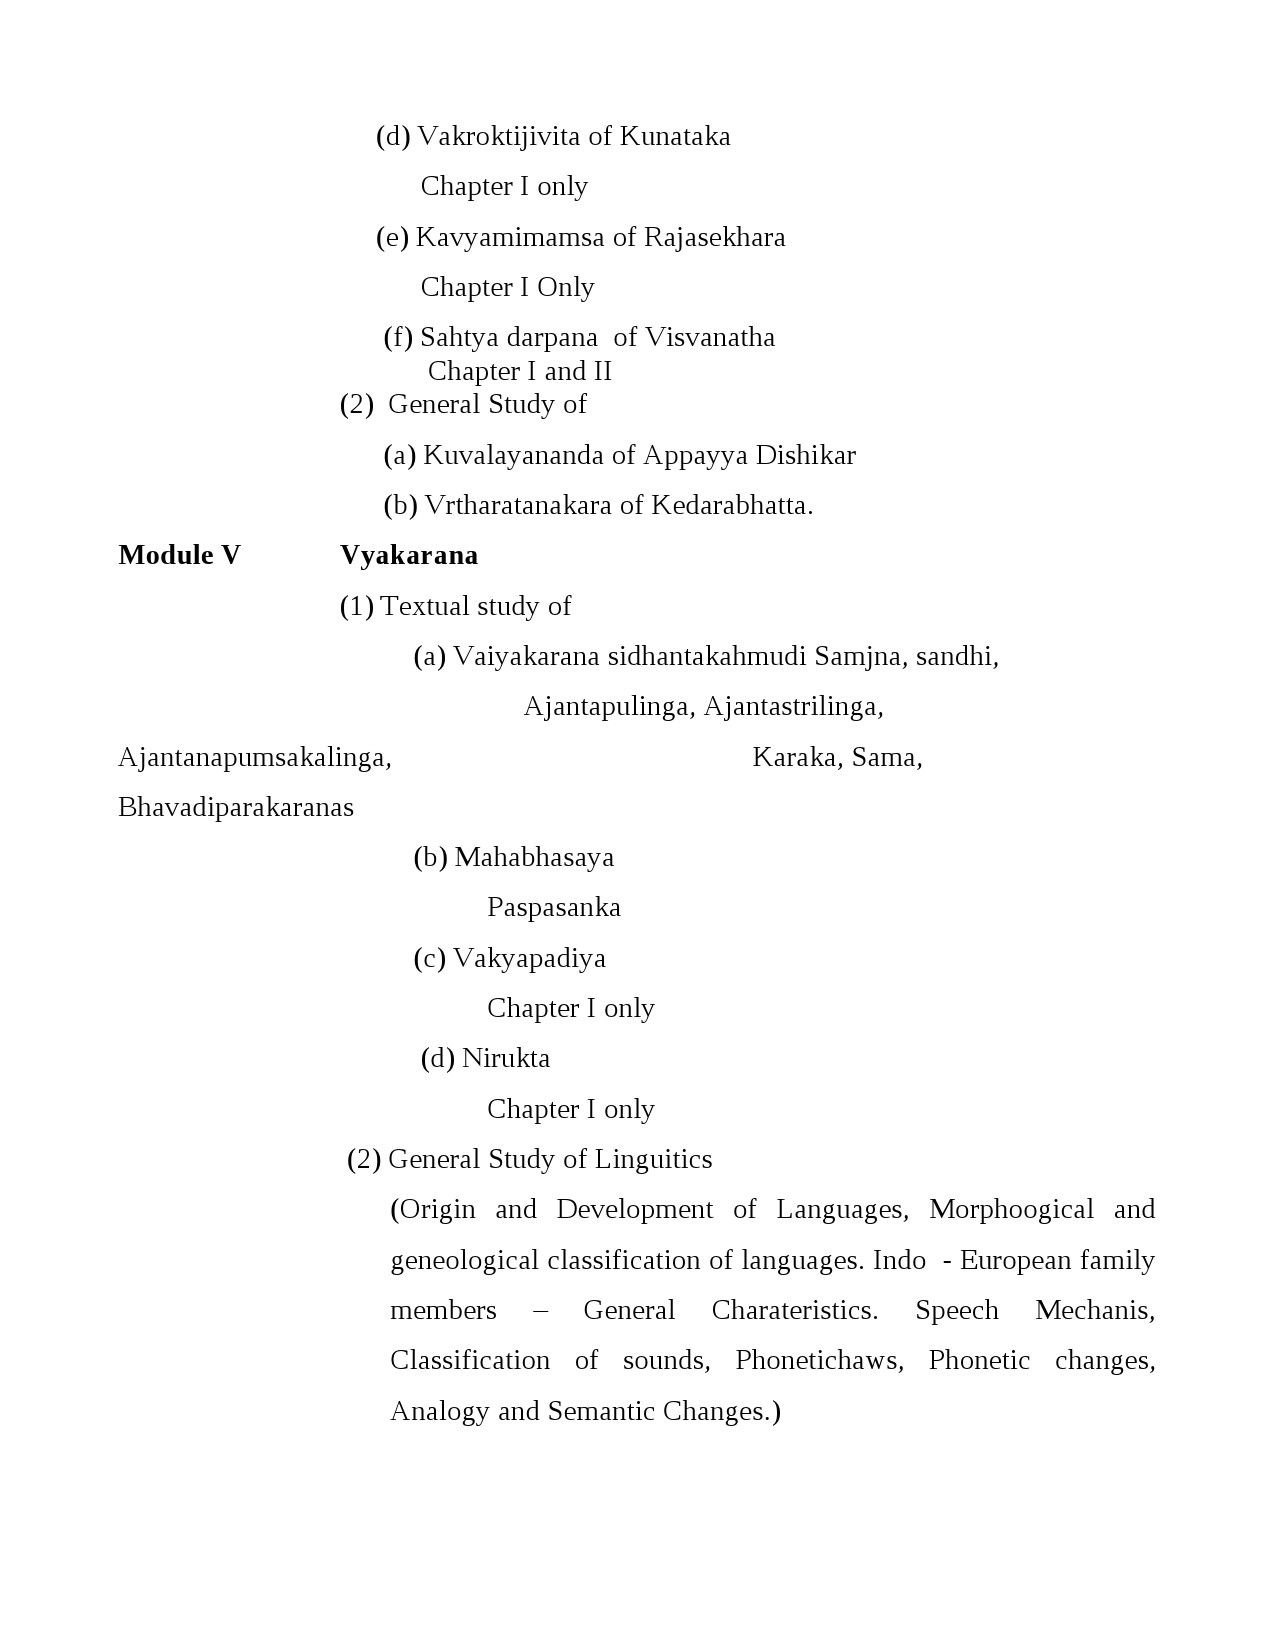 Sanskrit Syllabus for Kerala PSC 2021 Exam - Notification Image 3